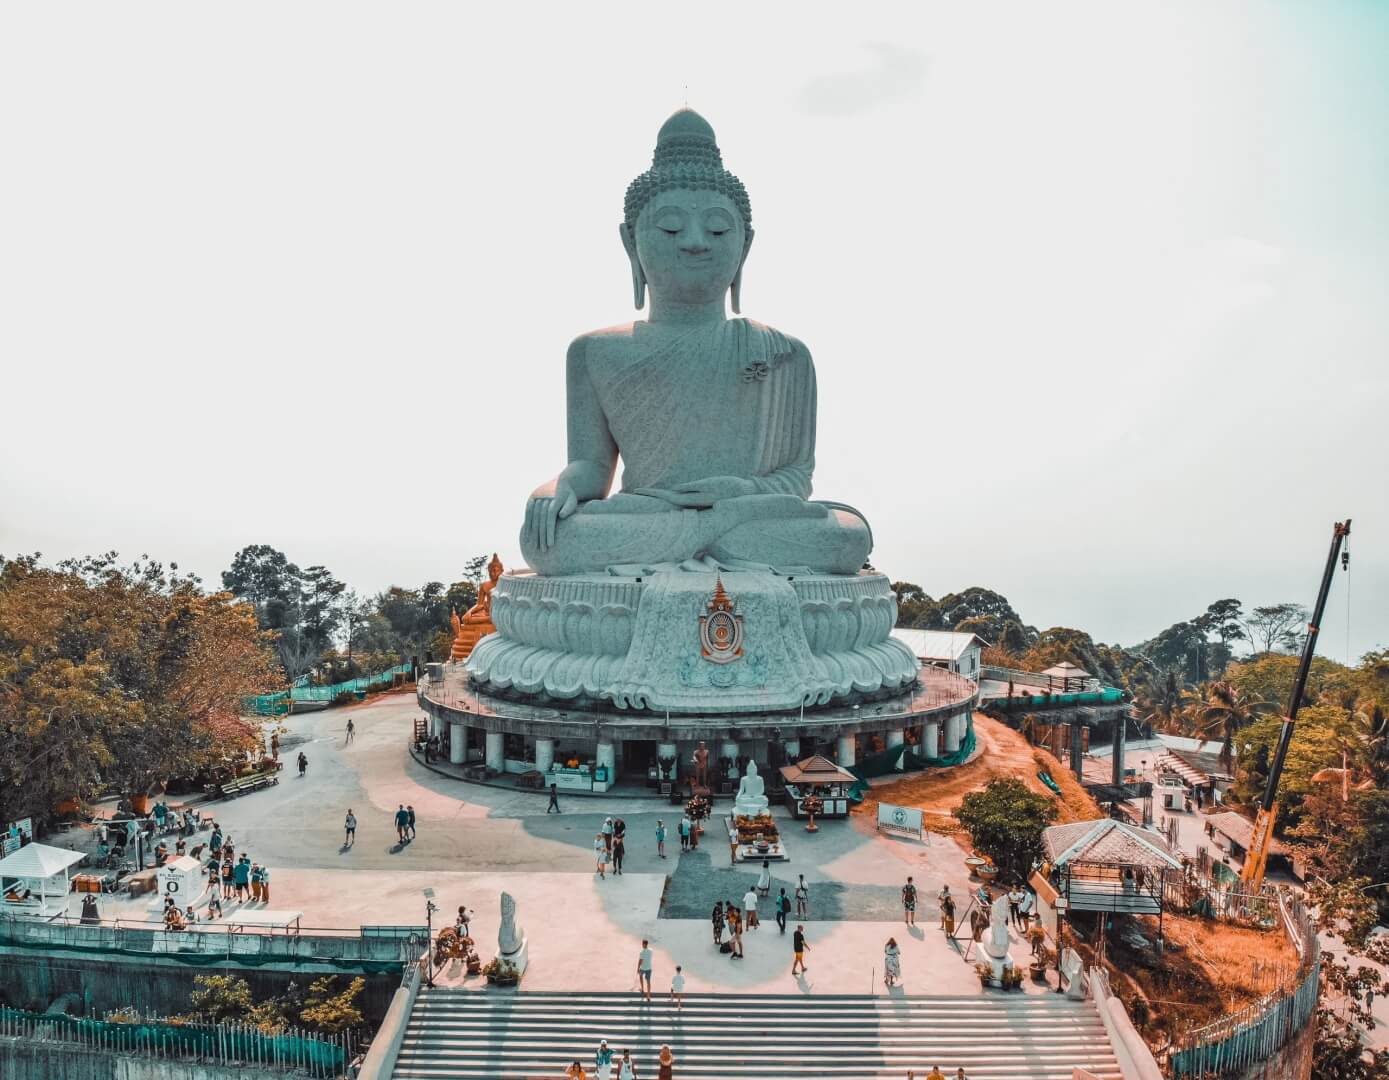 Estátua gigante de concreto de Buda. Imagem disponível em Unsplash.